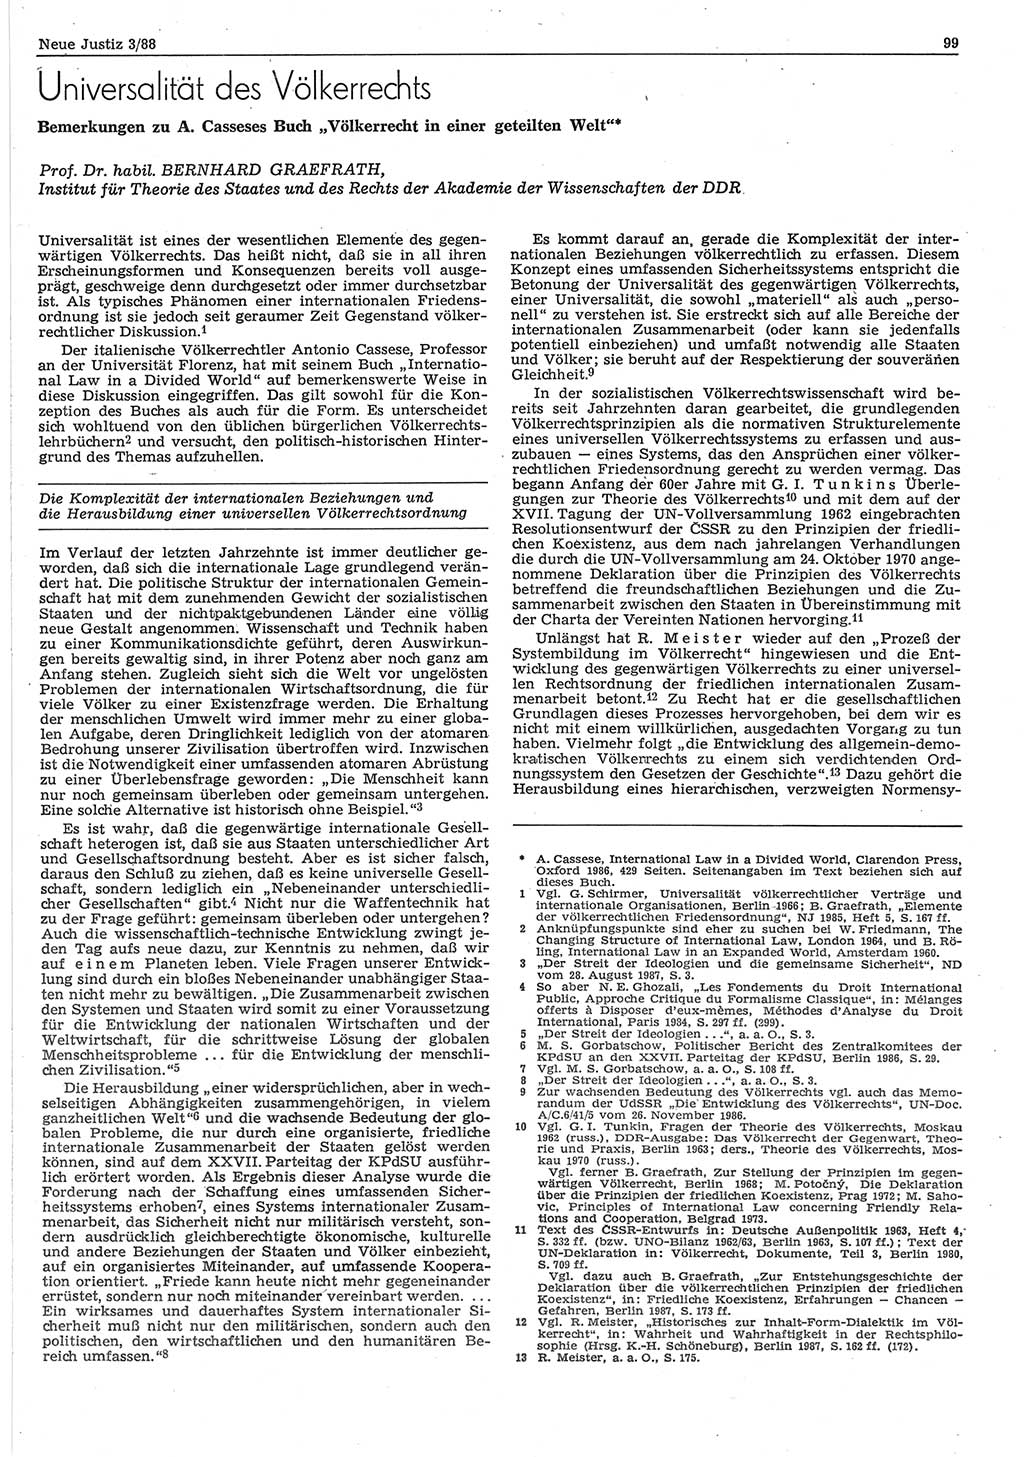 Neue Justiz (NJ), Zeitschrift für sozialistisches Recht und Gesetzlichkeit [Deutsche Demokratische Republik (DDR)], 42. Jahrgang 1988, Seite 99 (NJ DDR 1988, S. 99)